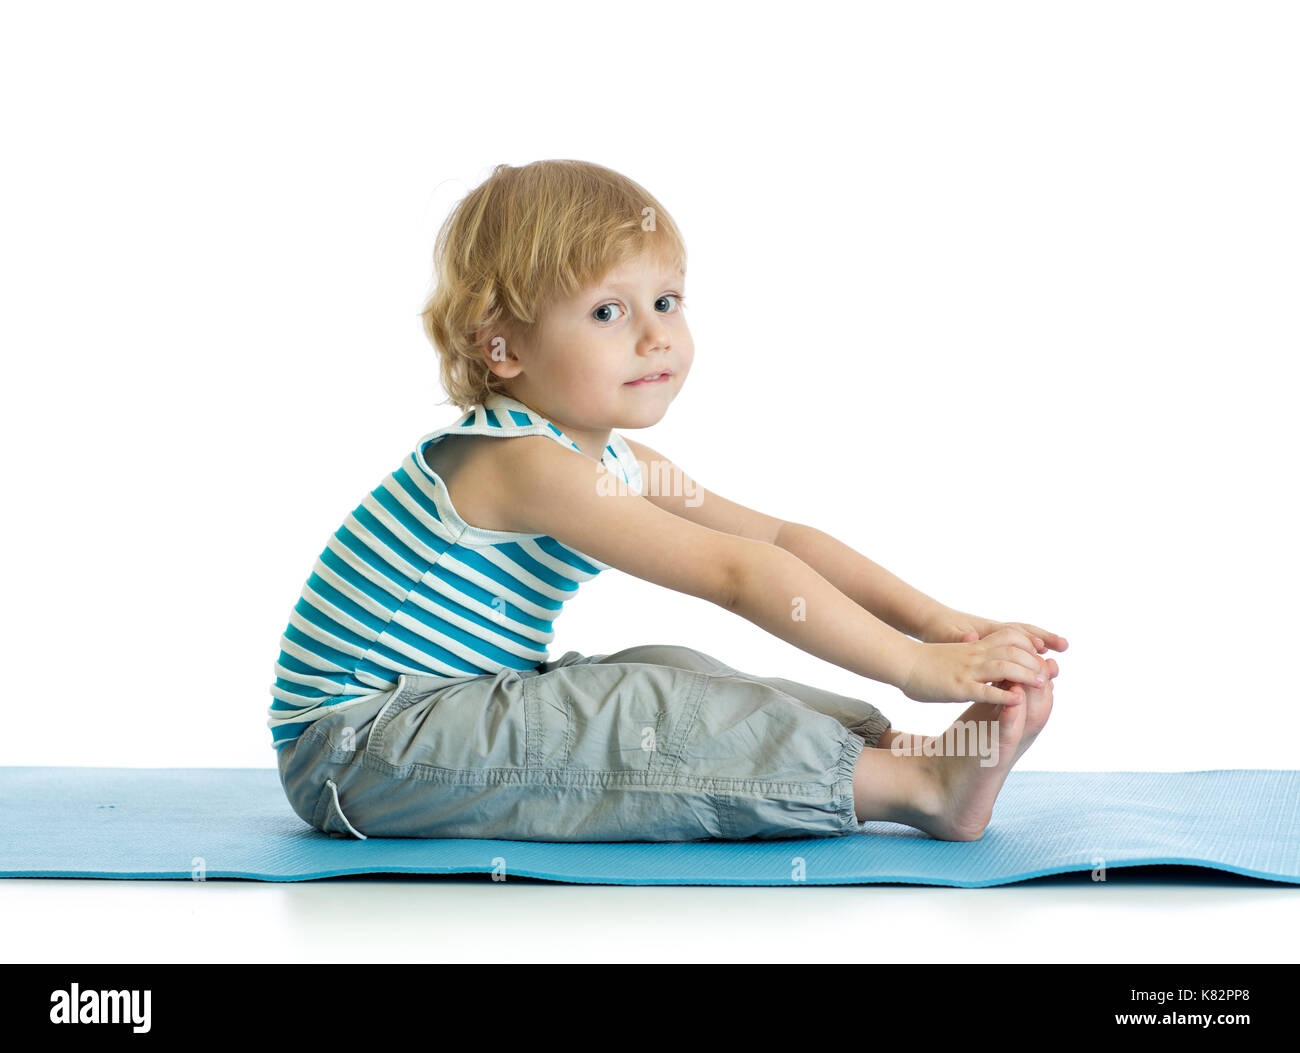 Ragazzo bambino la pratica dello yoga, stretching in esercizio di indossare abbigliamento sportivo. kid isolate su sfondo bianco Foto Stock